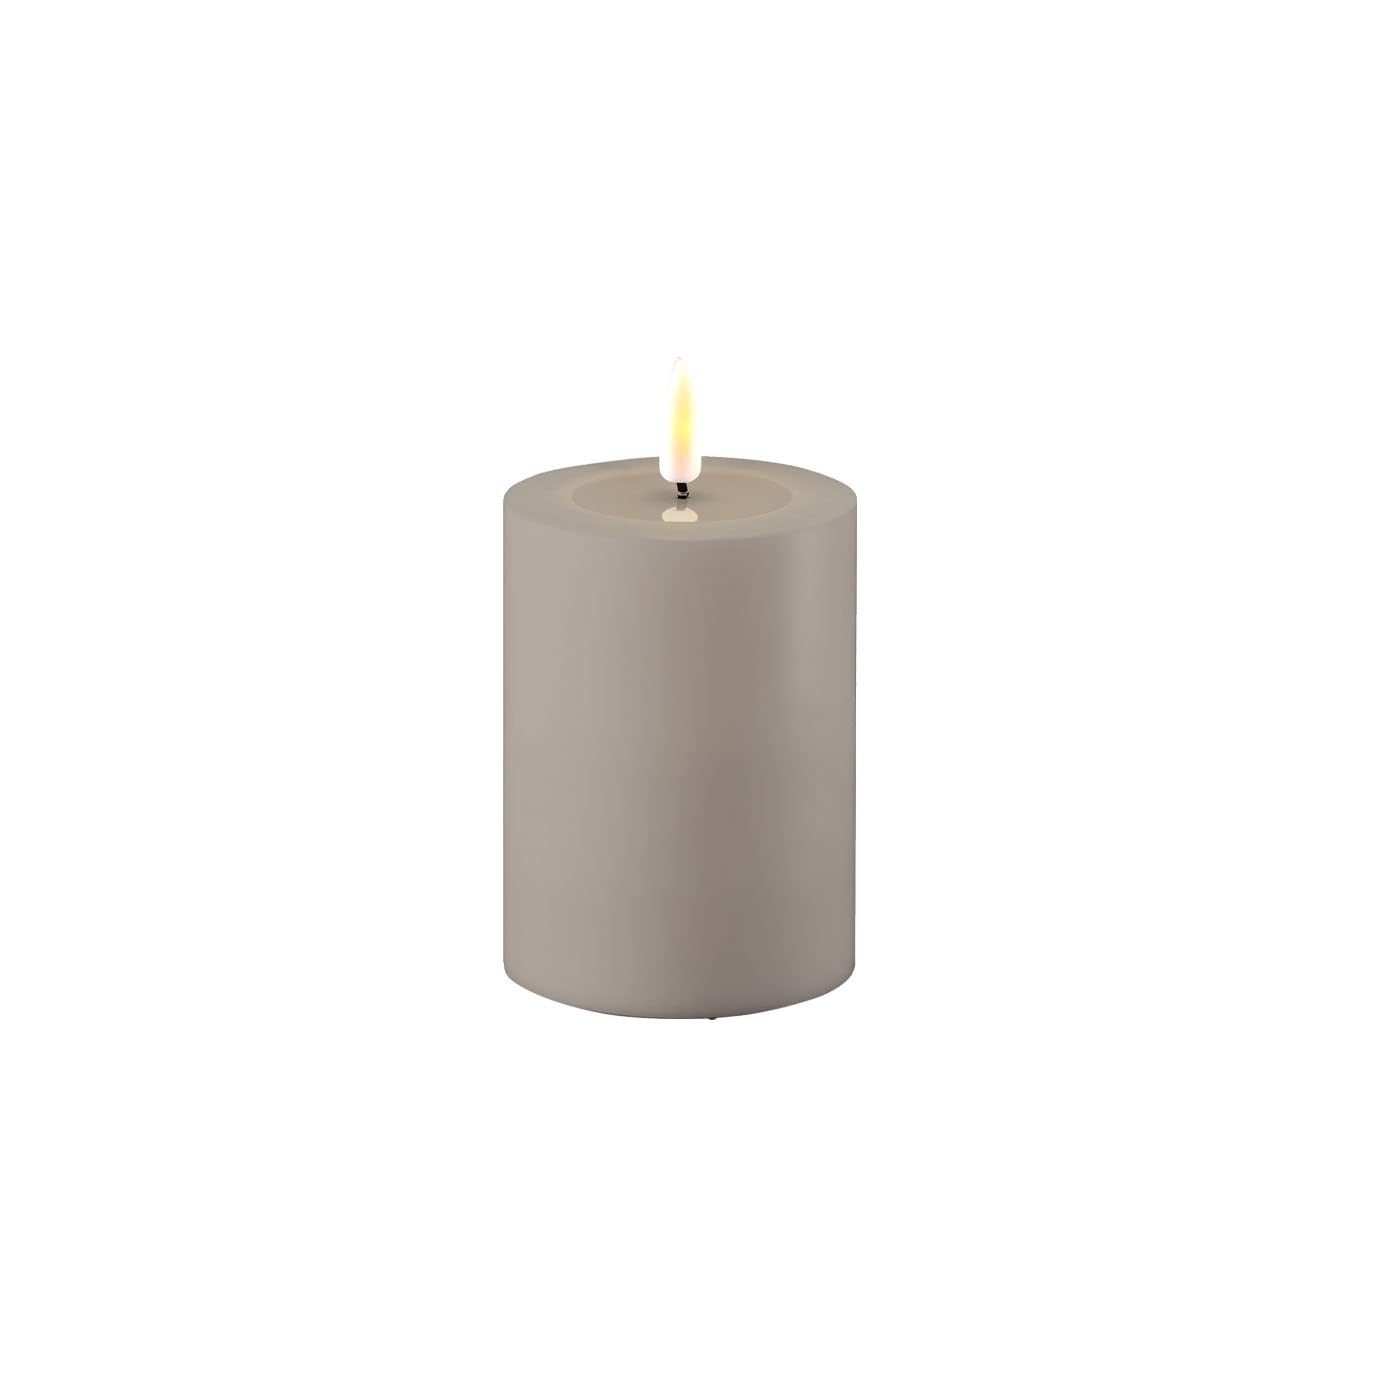 ReWu LED Kerze Deluxe Homeart, Outdoor LED Kerze (Kunststoff – Kein Echtwachs) mit realistischer Flamme, warmweißes Licht, Hitzebeständig für den Aussenbereich– (Grau)